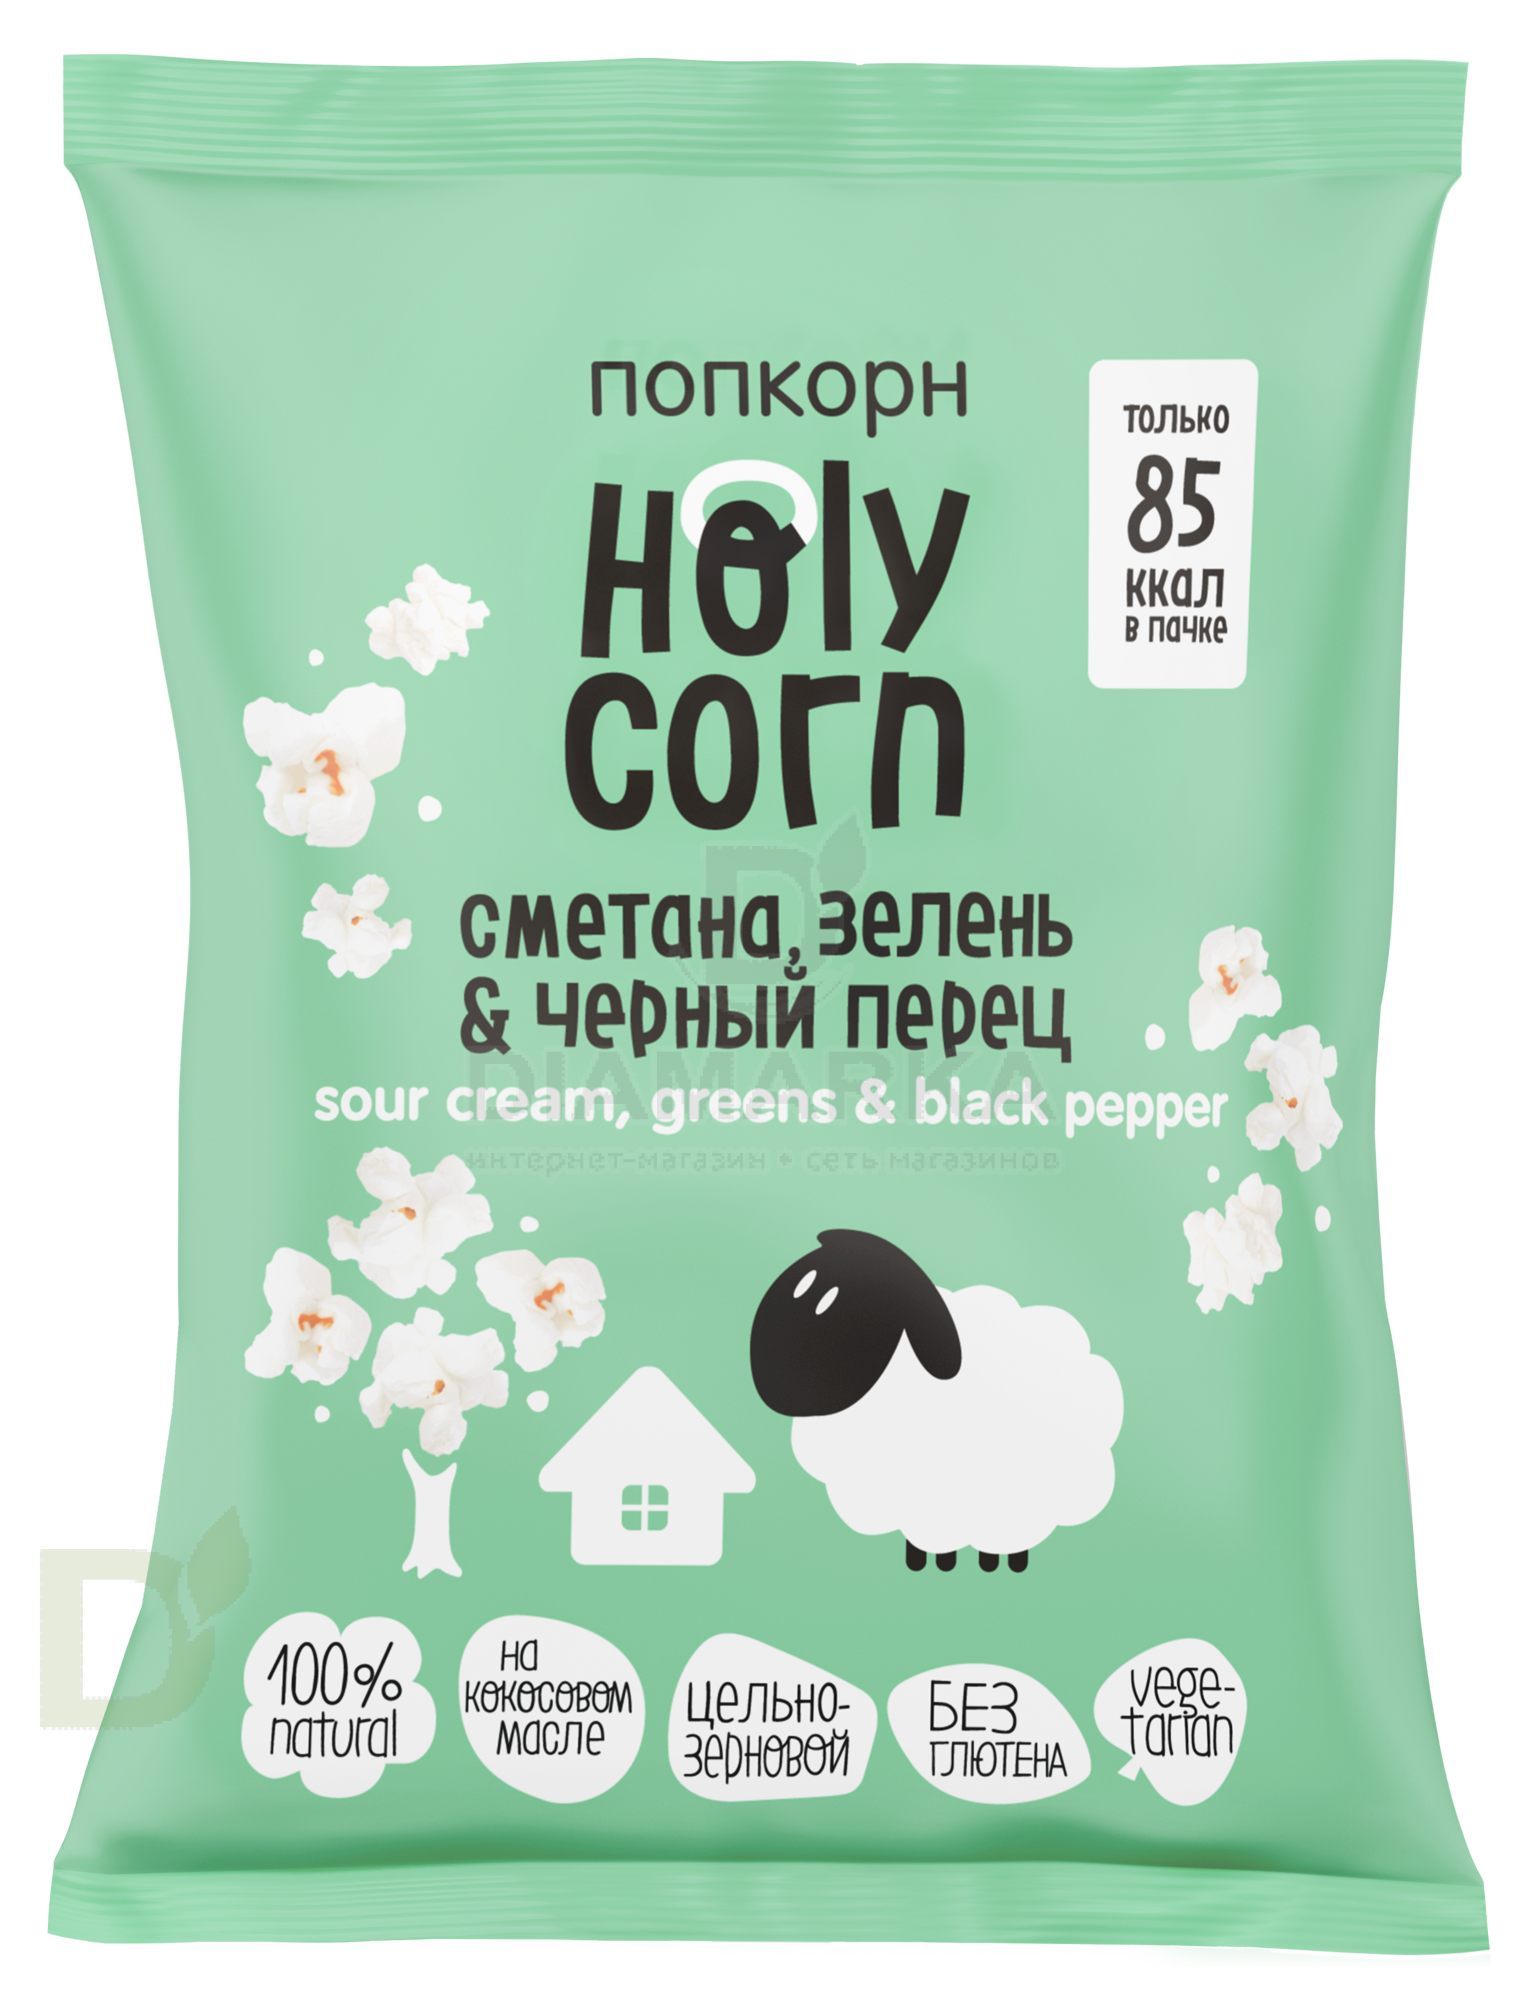 Попкорн Holy Corn "Сметана, зелень и черный перец" 20г.